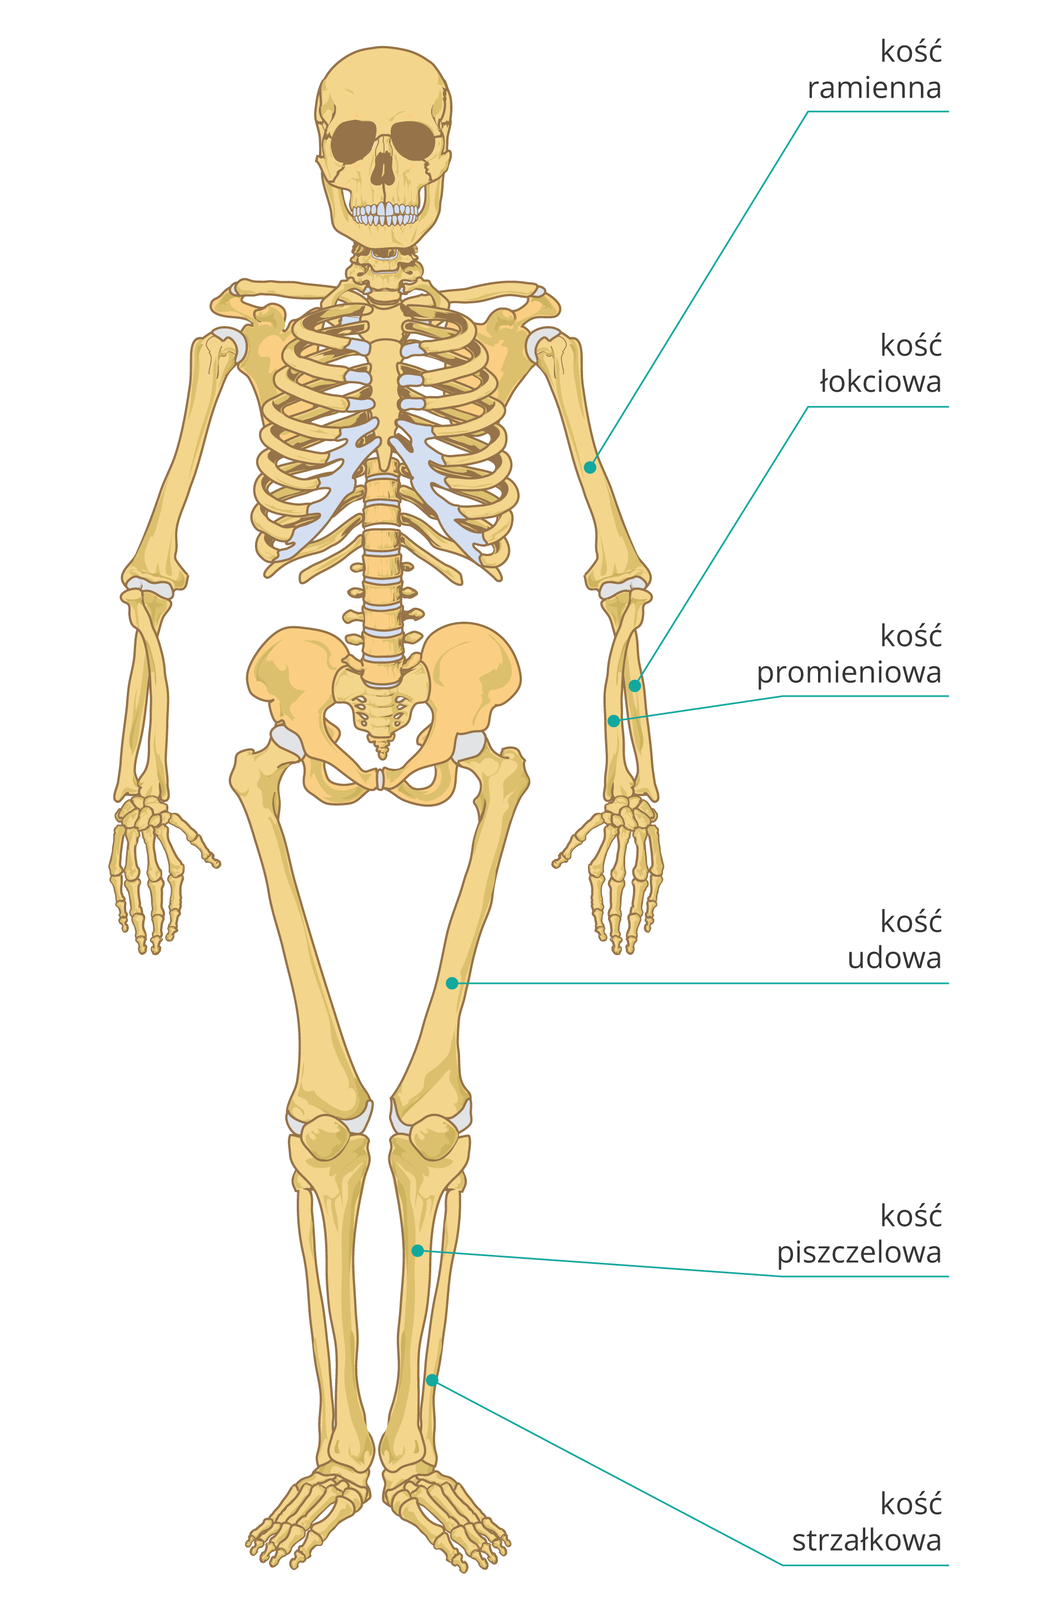 Ilustracja przedstawia szkielet kostny człowieka ustawiony przodem do obserwatora. Najważniejsze i najbardziej narażone na złamanie kości kończyn opisane są po prawej stronie. Wyróżniono sześć kości, licząc od góry: na ręce kość ramienną powyżej łokcia, kości łokciową i promieniową poniżej łokcia, na nodze kość udową powyżej kolana oraz grubszą kość piszczelową i cieńszą kość strzałkową poniżej kolana.